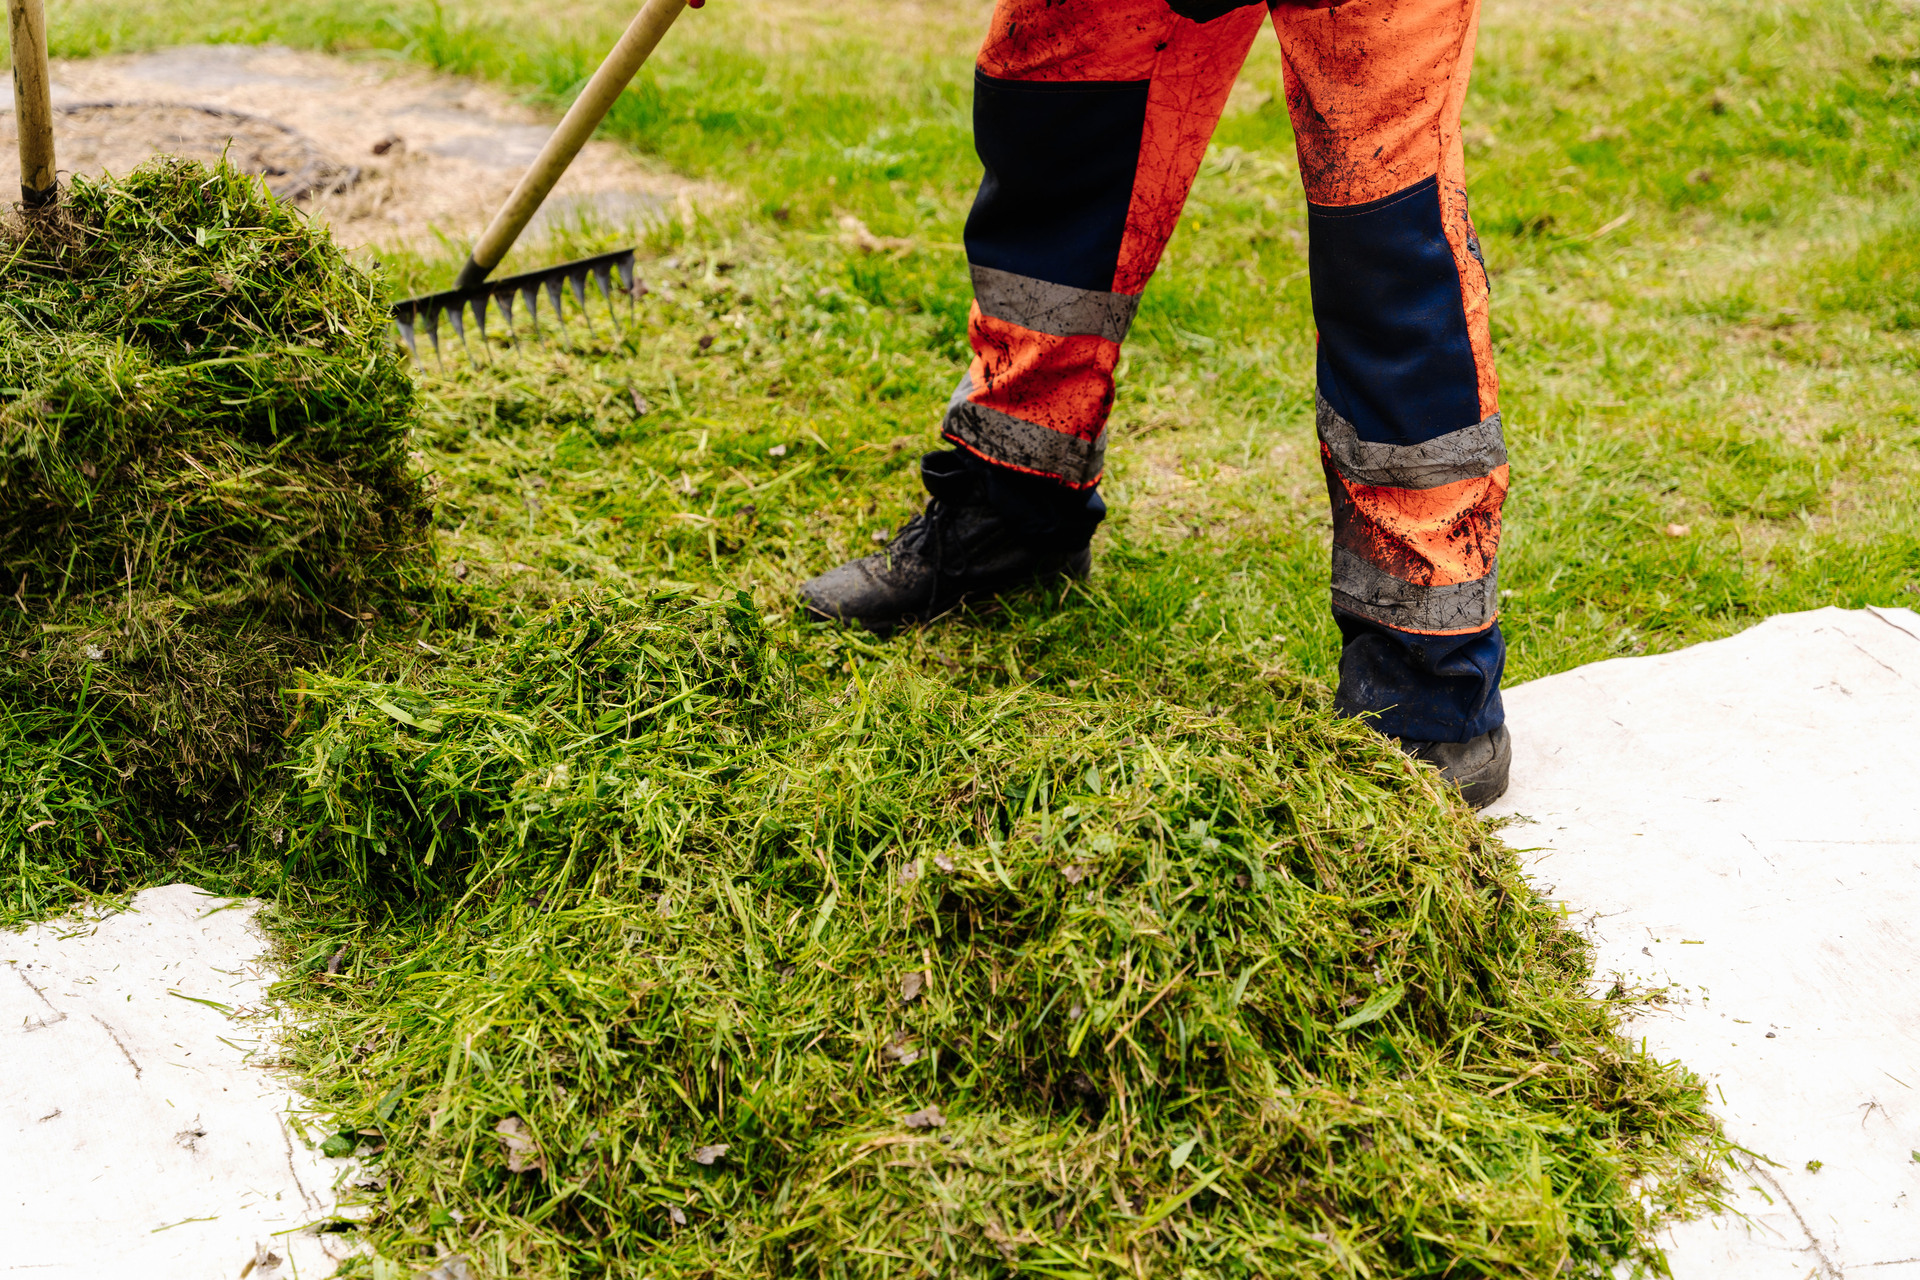 Na tym obrazku widzimy mężczyznę, który grabi skoszoną trawę, aby uporządkować trawnik po koszeniu. Zręcznie używa grabi, zbierając resztki trawy i tworząc schludne linie na powierzchni trawnika. Jego staranność i precyzja w działaniu podkreślają dbałość o estetykę ogrodu i utrzymanie porządku po wykonanej pracy